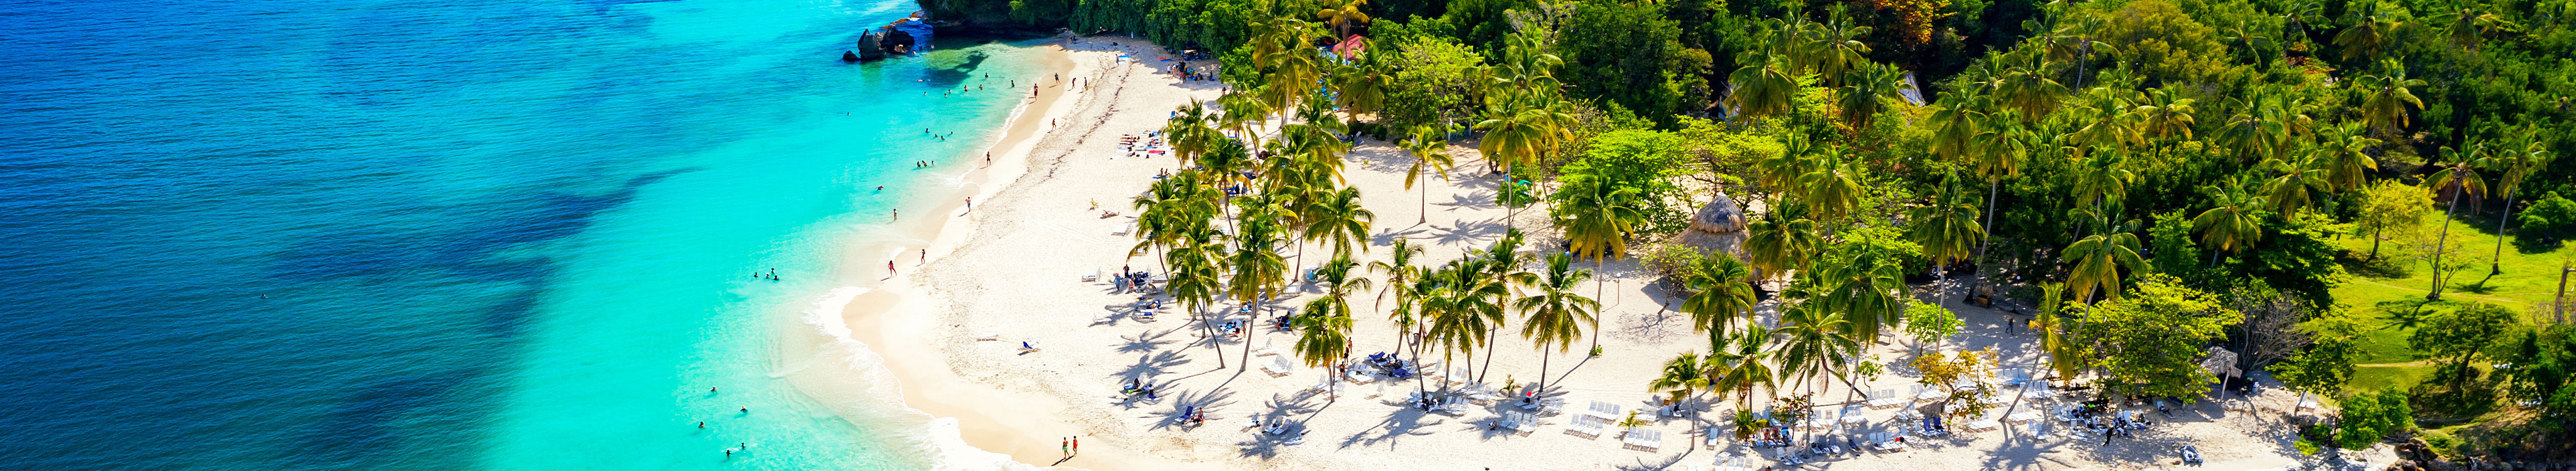 Urlaub Karibik. Weißer tropischer Sandstrand mit grünen Palmen und türkisblauem Meer.